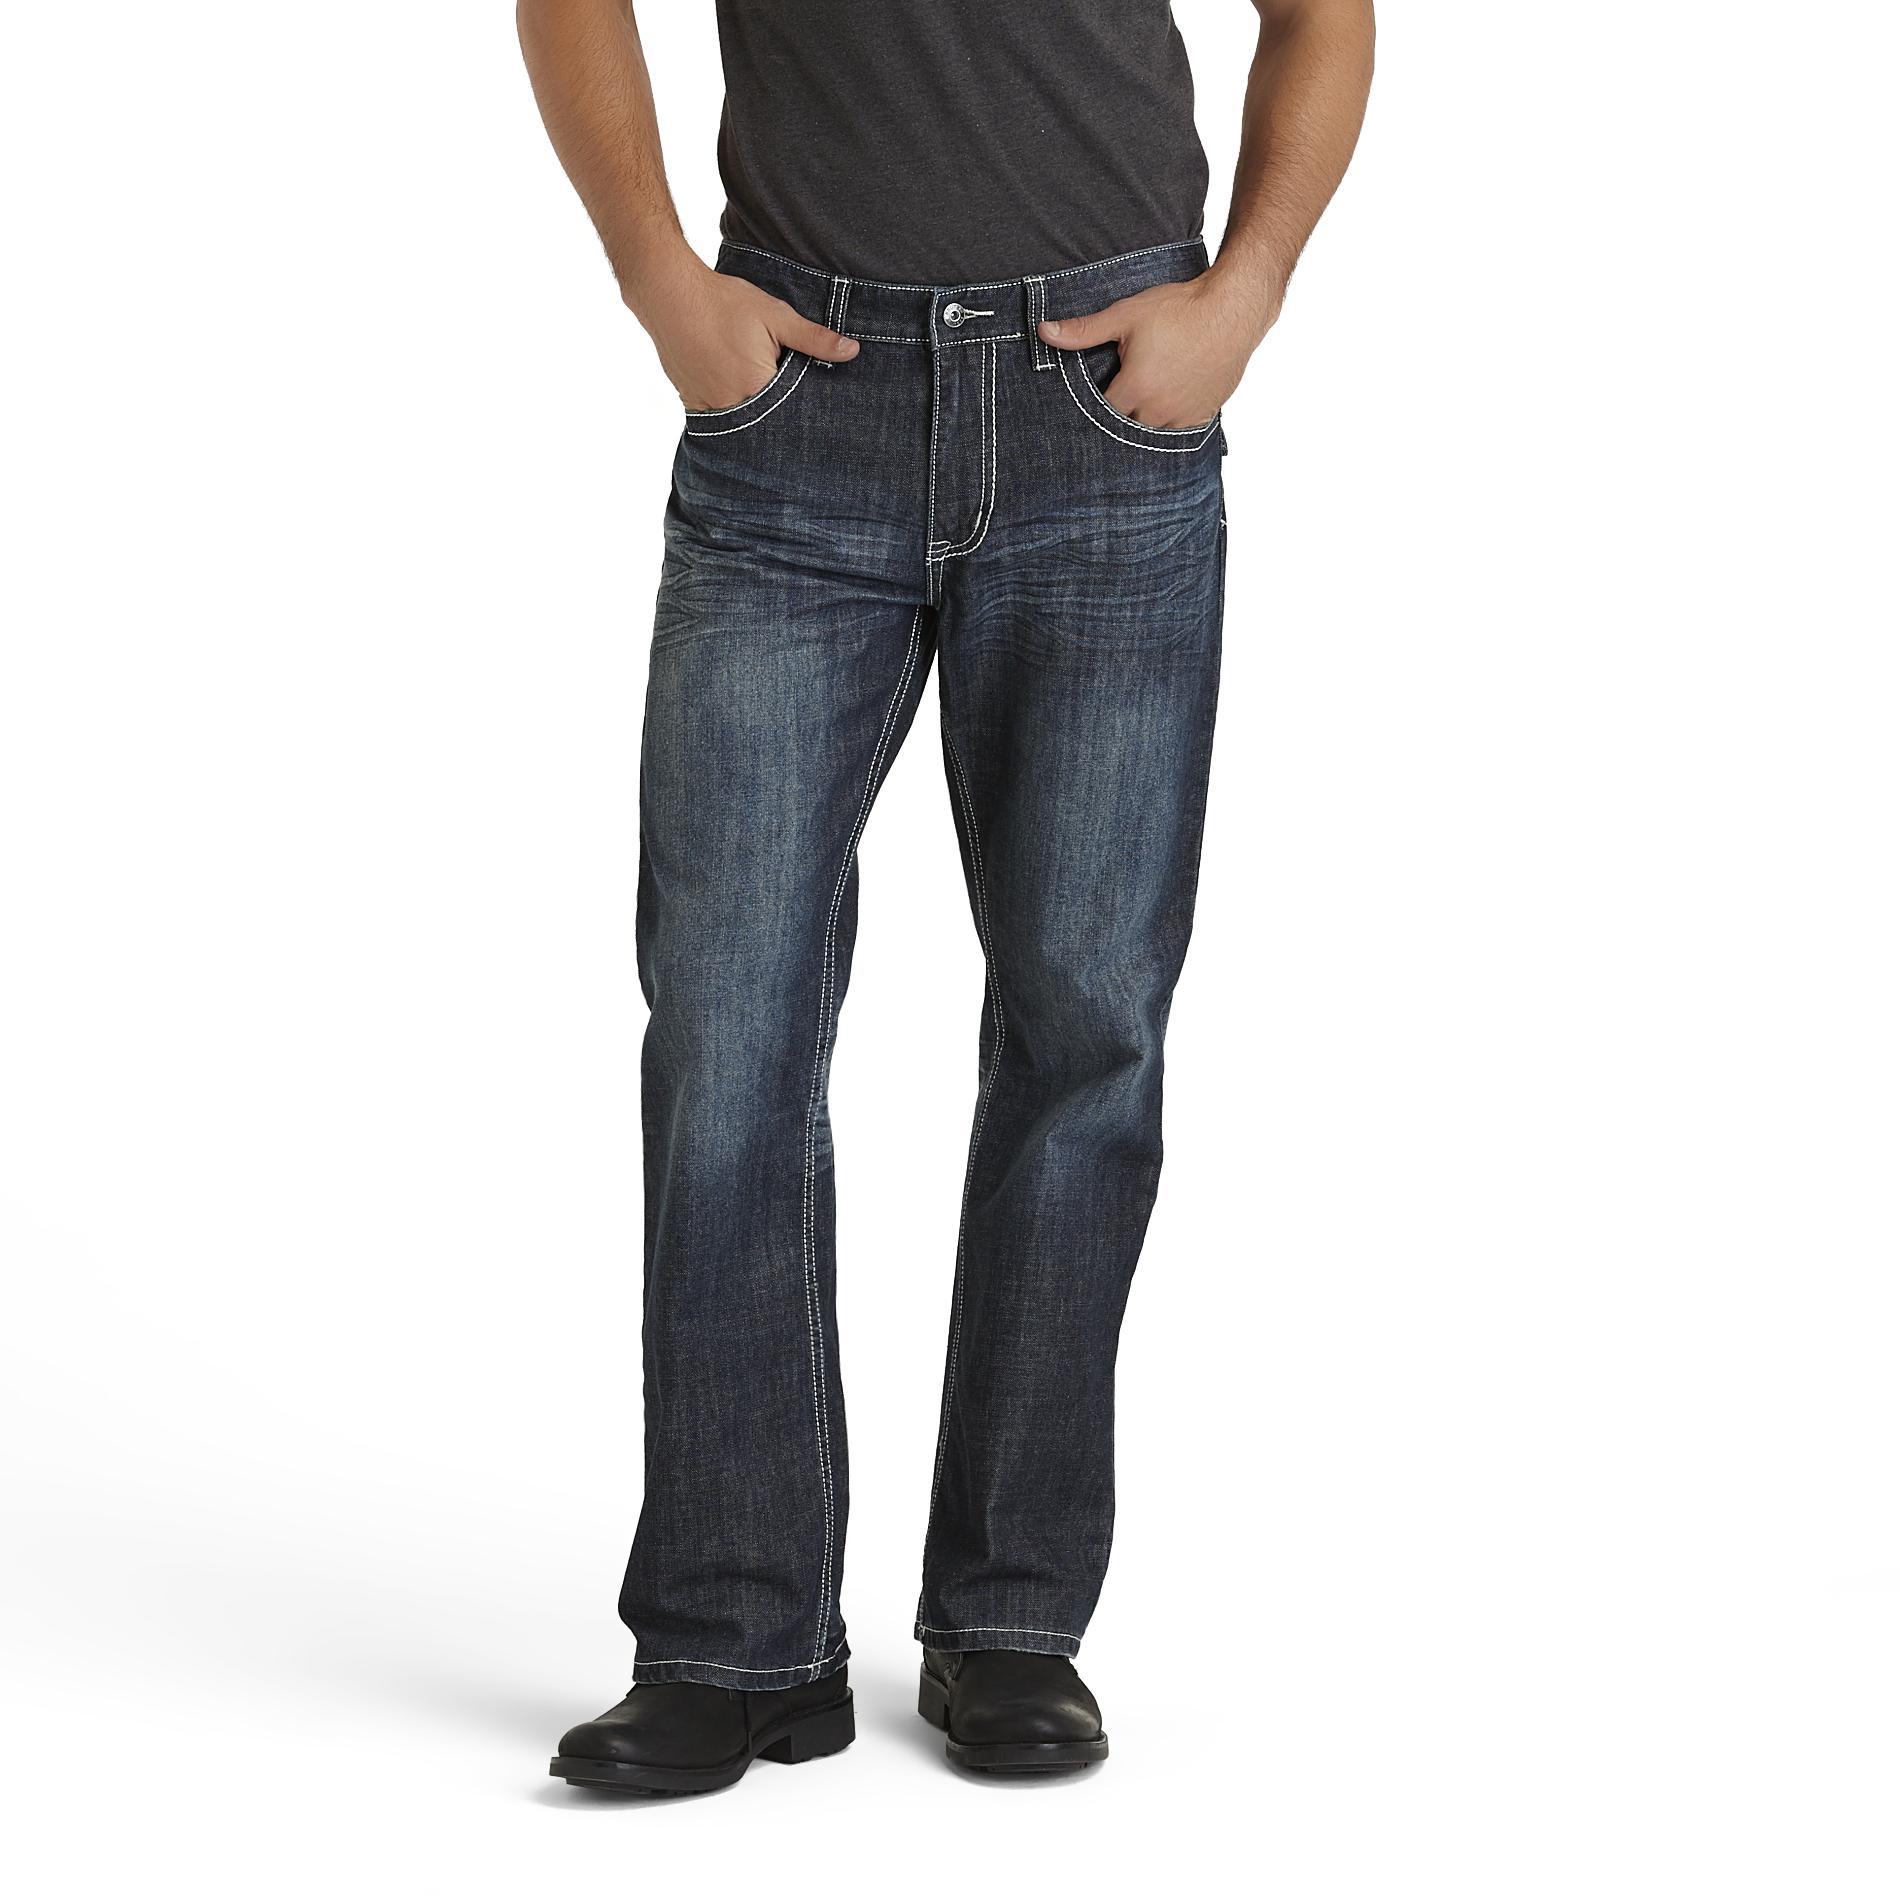 Route 66 Men's Premium Slim Bootcut Jeans